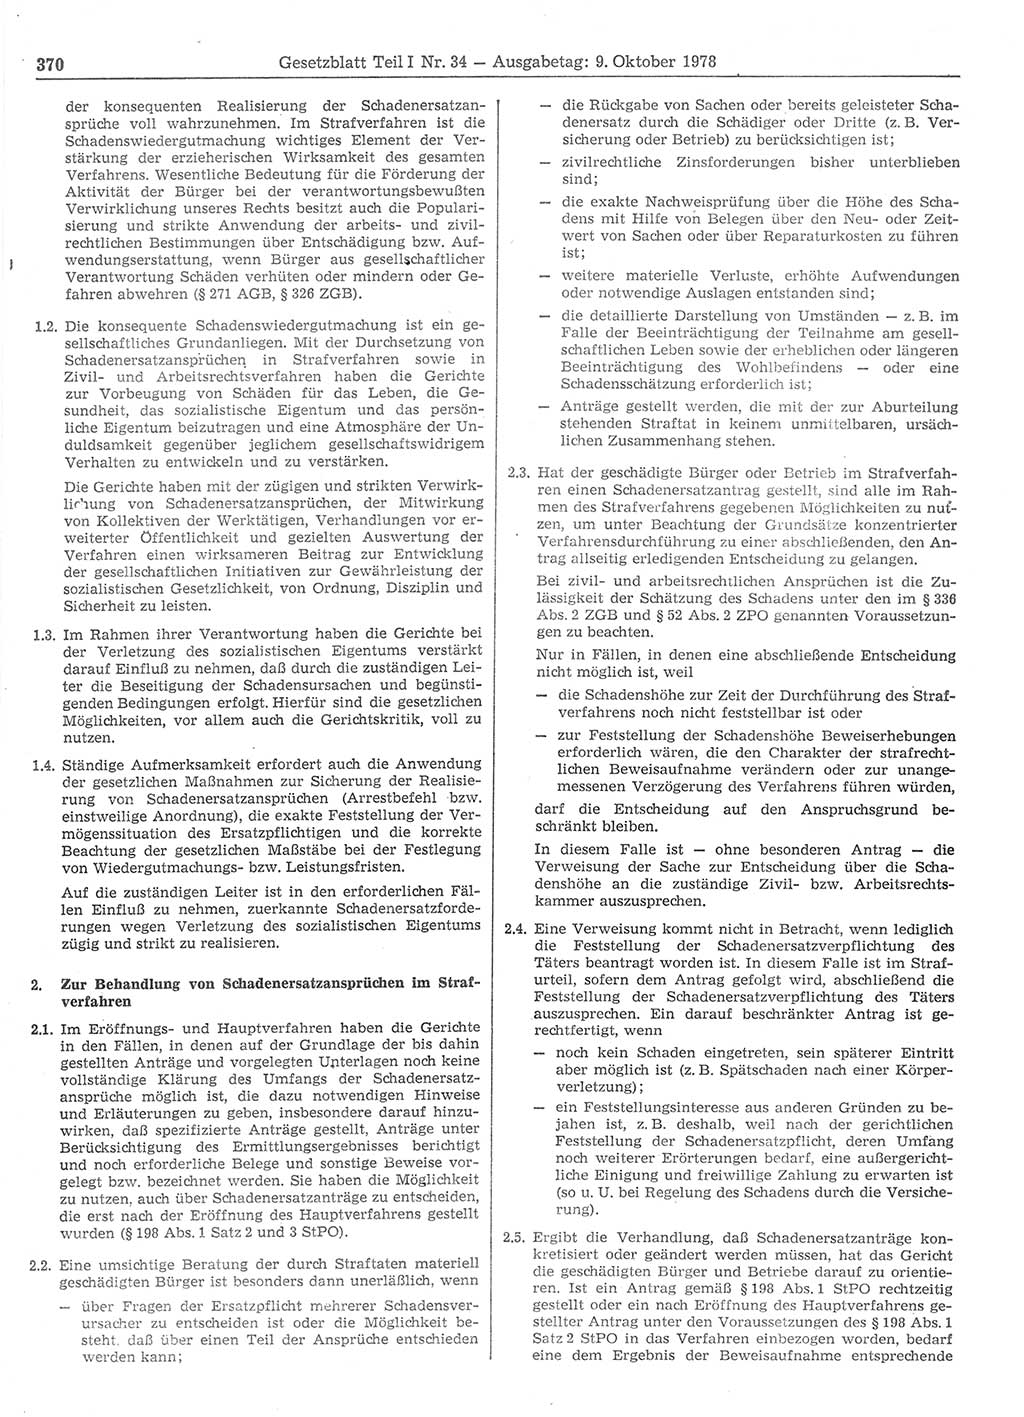 Gesetzblatt (GBl.) der Deutschen Demokratischen Republik (DDR) Teil Ⅰ 1978, Seite 370 (GBl. DDR Ⅰ 1978, S. 370)